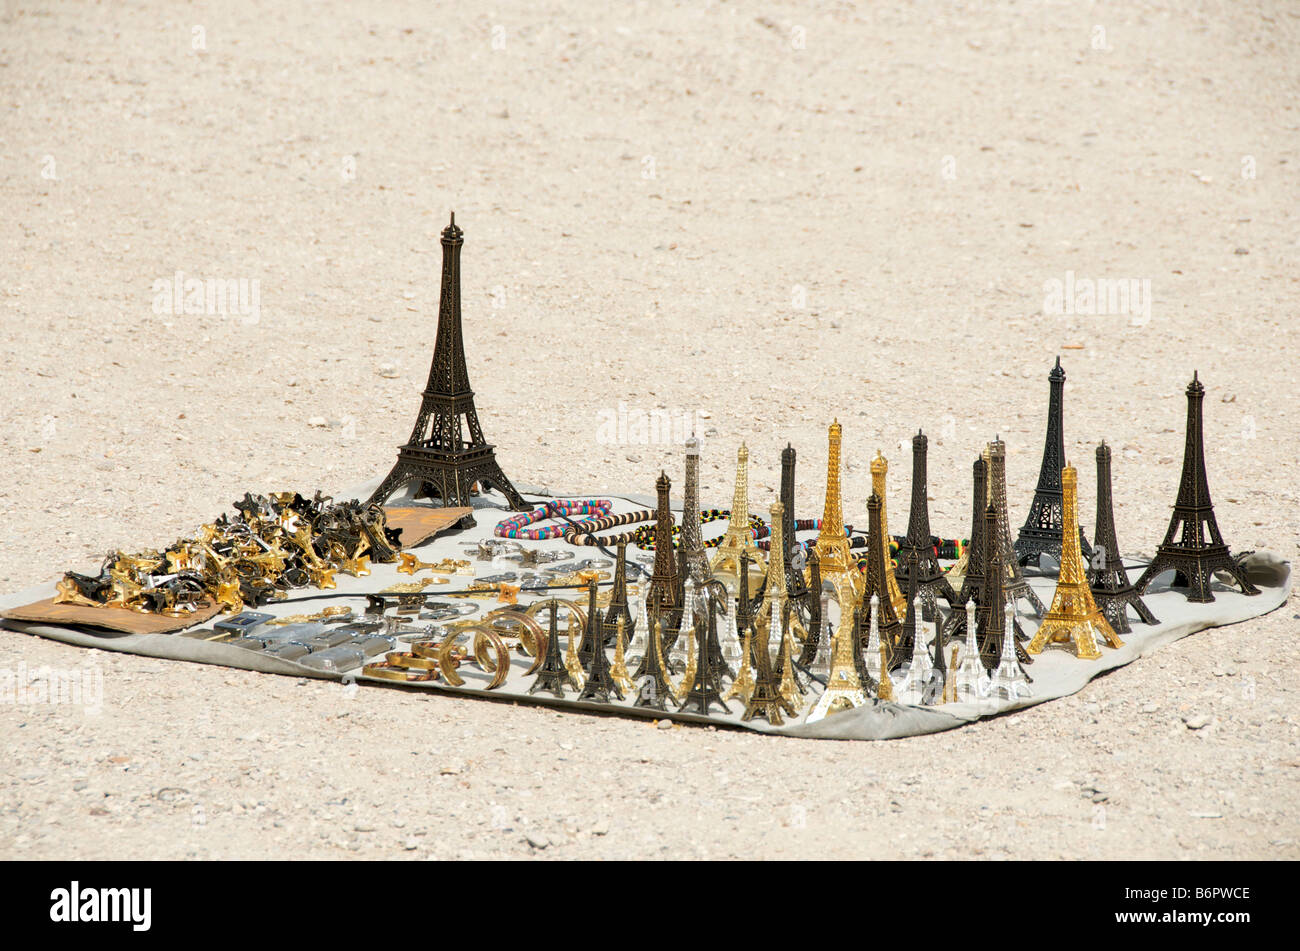 Miniature Eiffel Tower souvenir. Paris. France Stock Photo